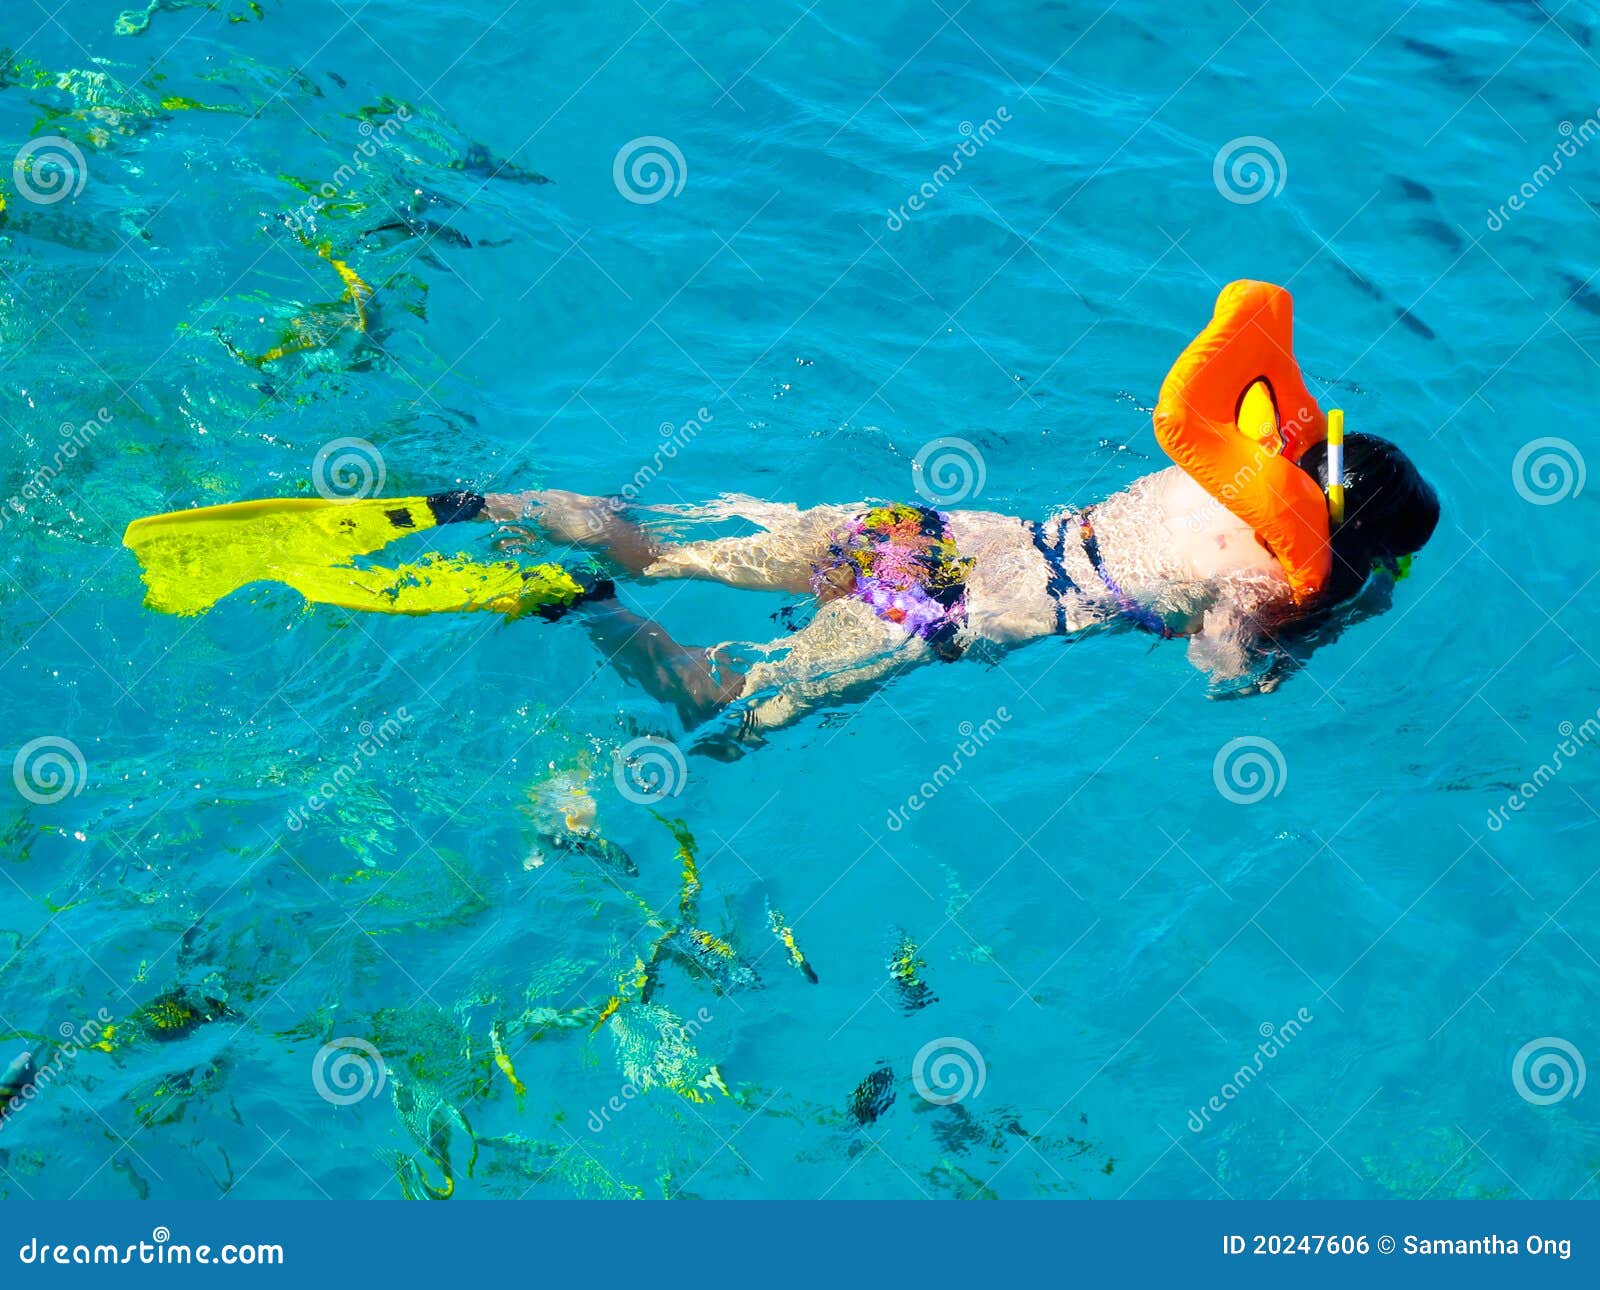 scuba diving in the caribbean sea, largo, cuba